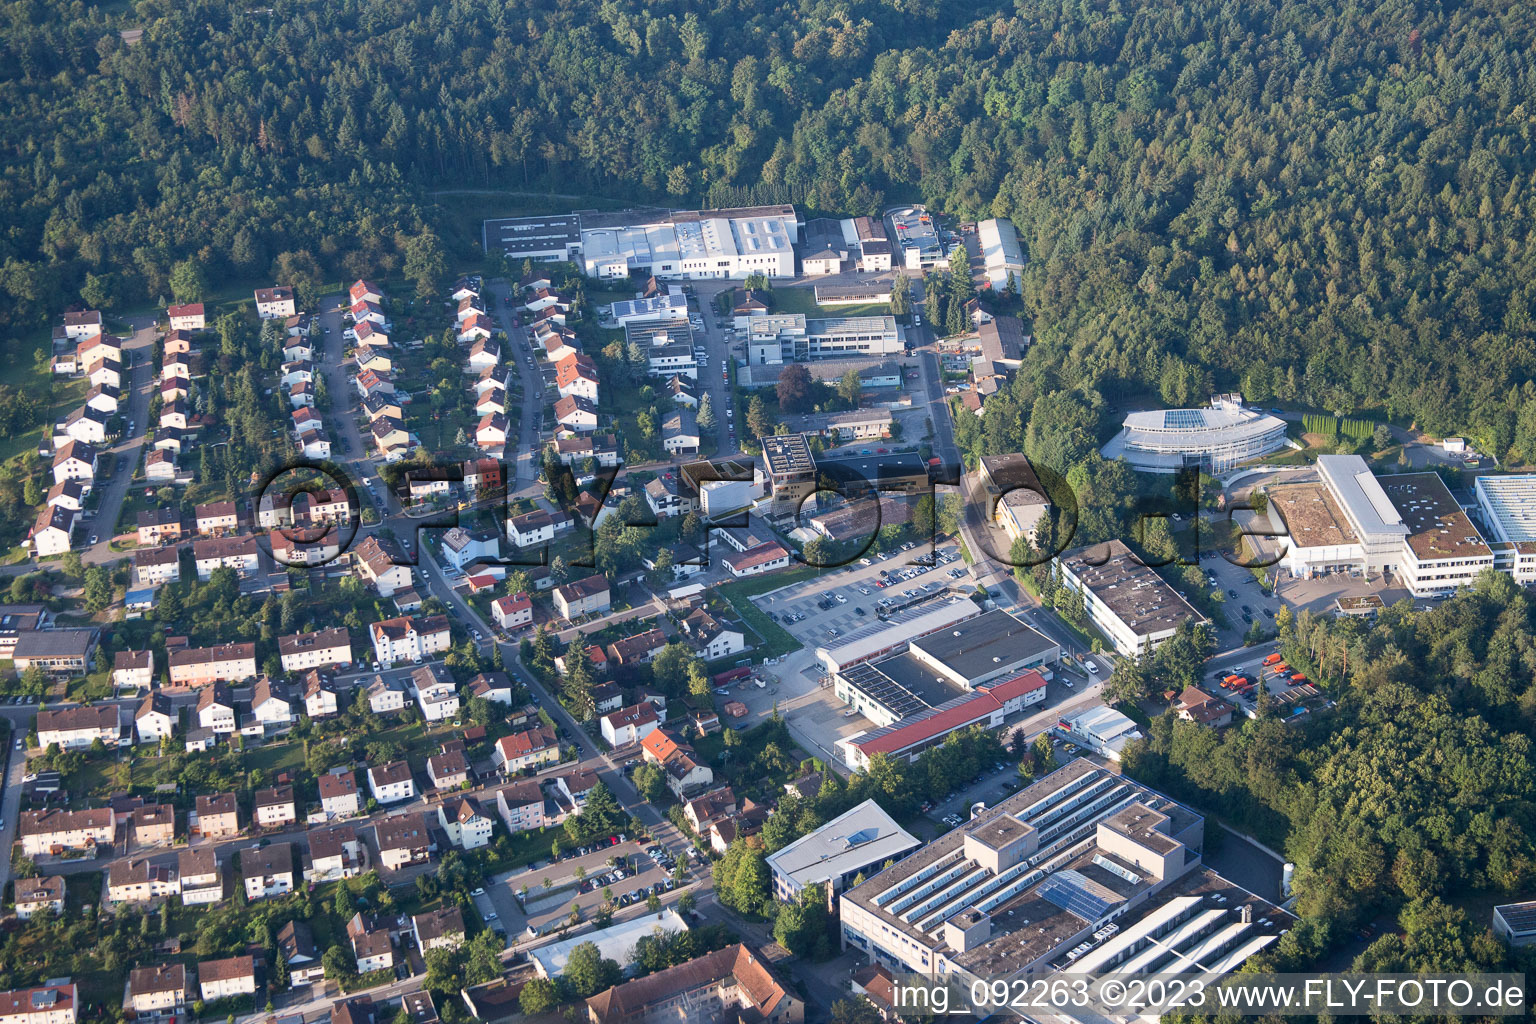 Ispringen im Bundesland Baden-Württemberg, Deutschland aus der Luft betrachtet